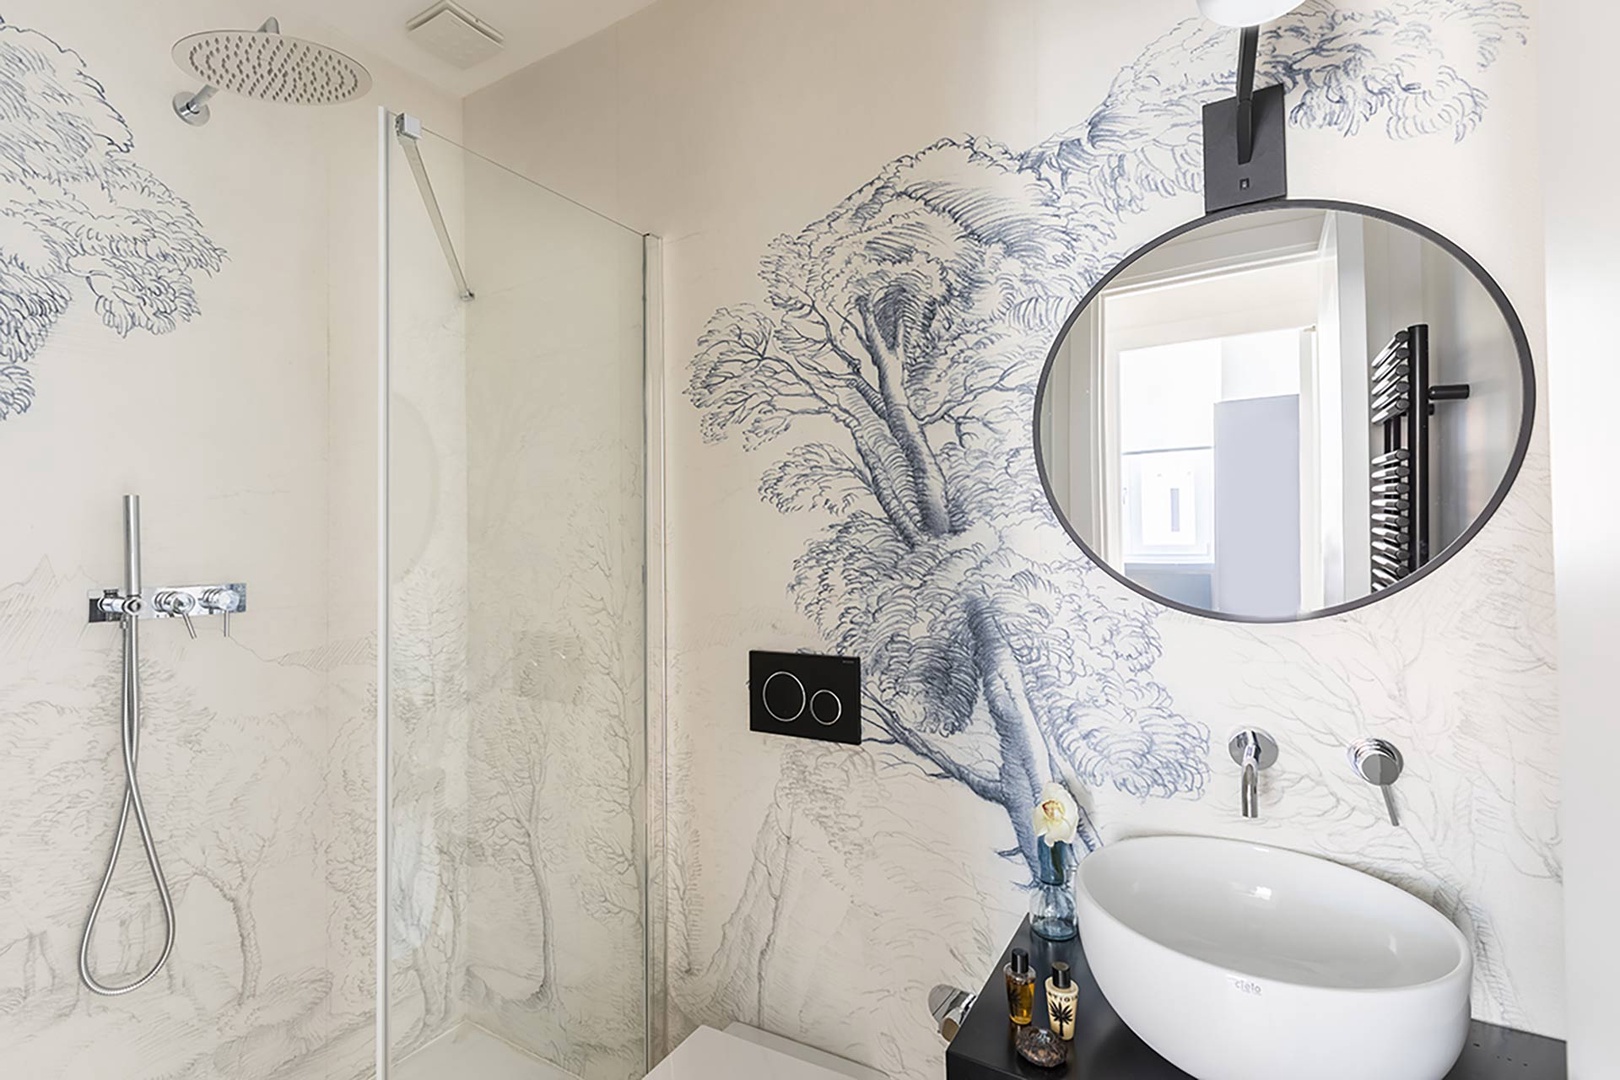 A beautiful motif adorns bathroom 2.